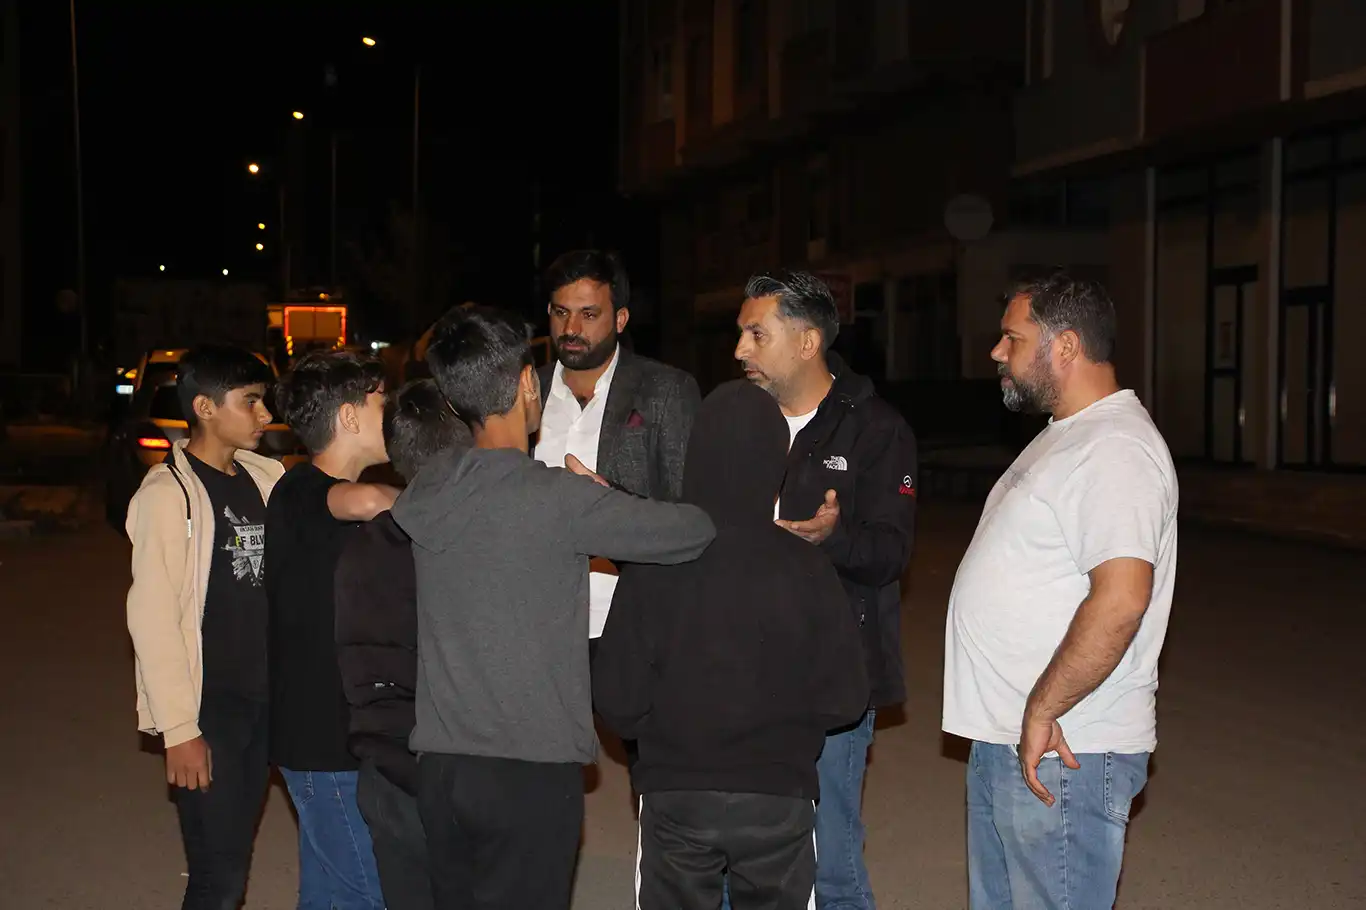 Çocuk kaçırma girişimi iddiası nedeni ile Ağrı'da bir mahalle sakinleri tedirgin